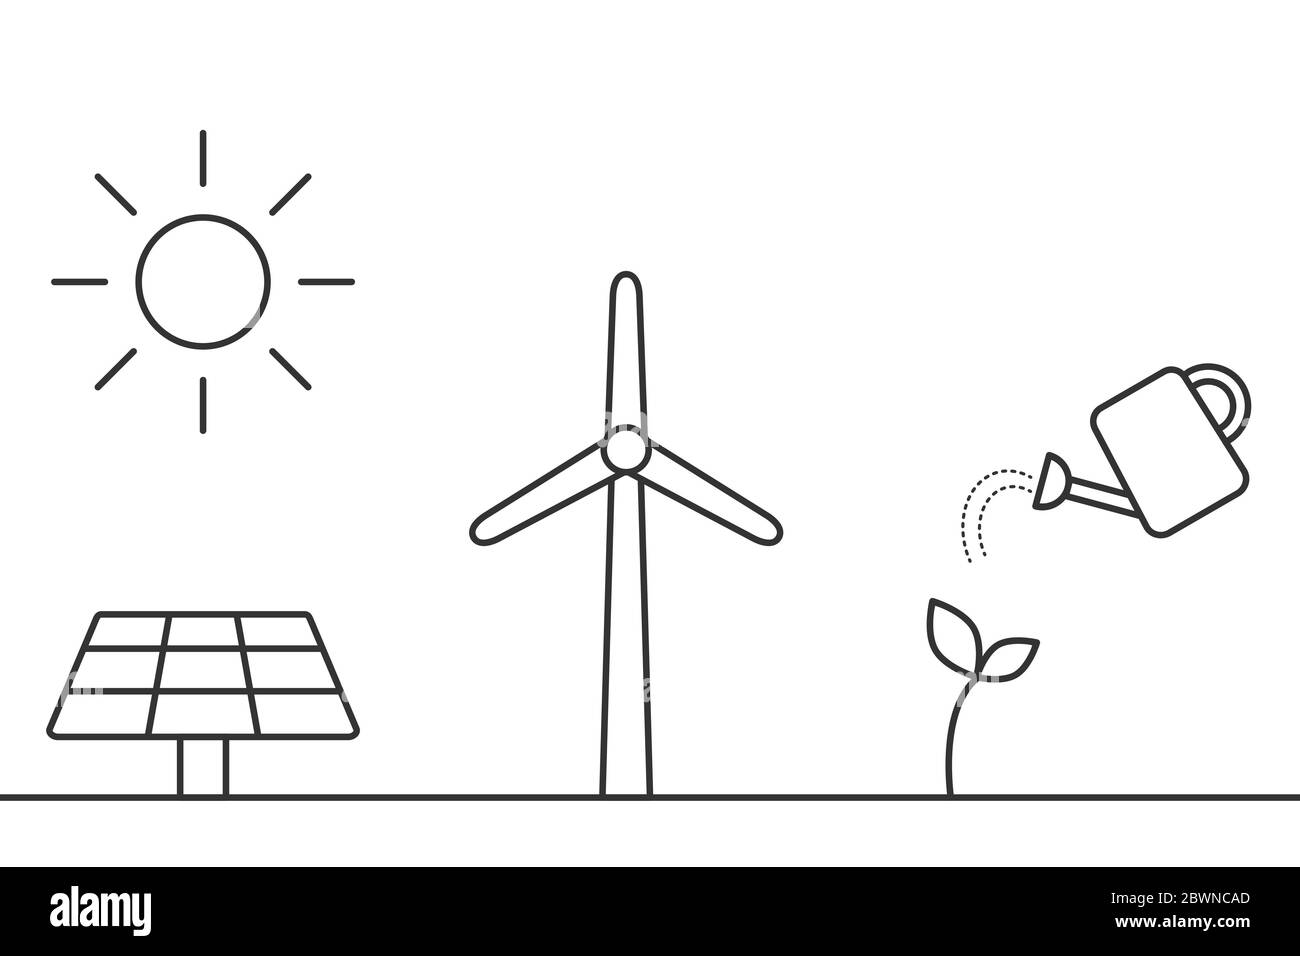 Sonnenkollektoren, Windkraftanlagen, Biokraftstoff-Linien-Symbole. Alternative, nachhaltige Energiequellen. Umweltfreundliche Verfahren für erneuerbare Energien. Schwarzer Umriss Stock Vektor